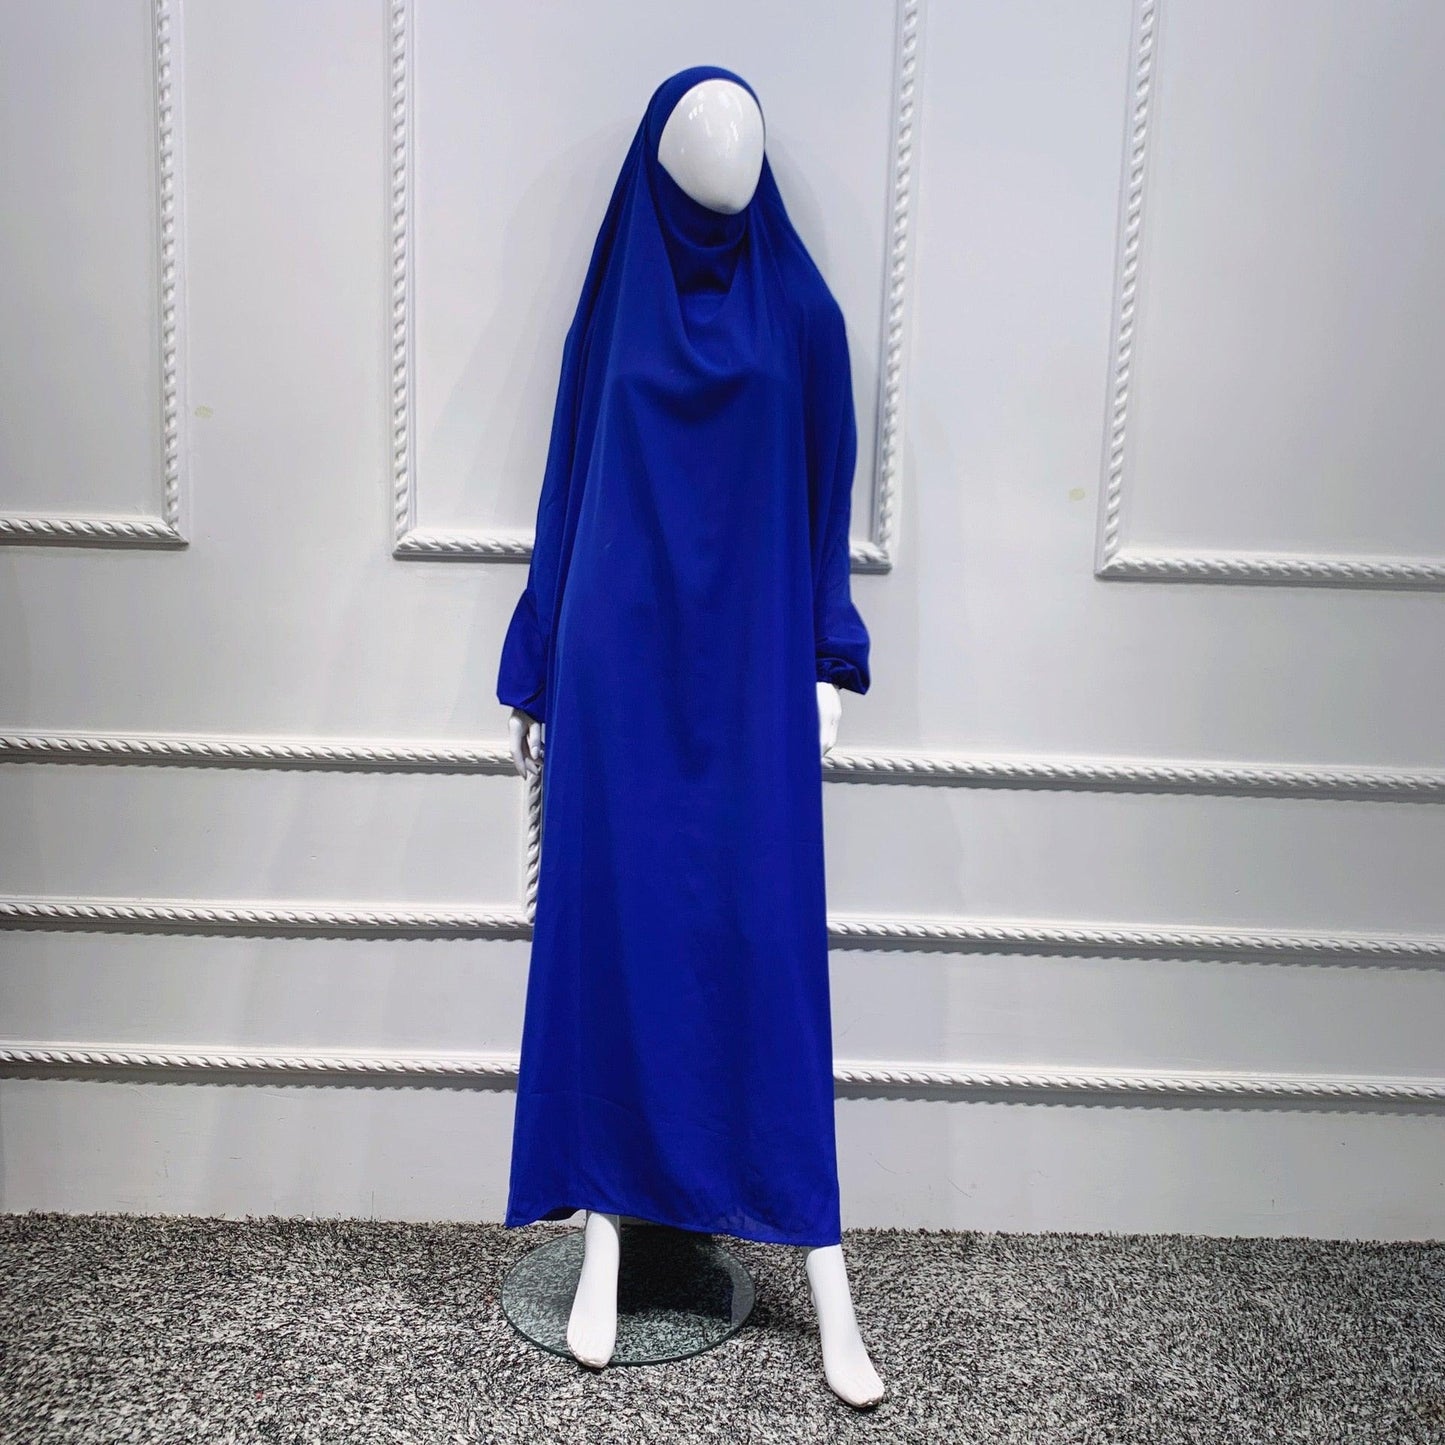 Women Hijab Dress Garment Abaya - Jazmie Jamaludin